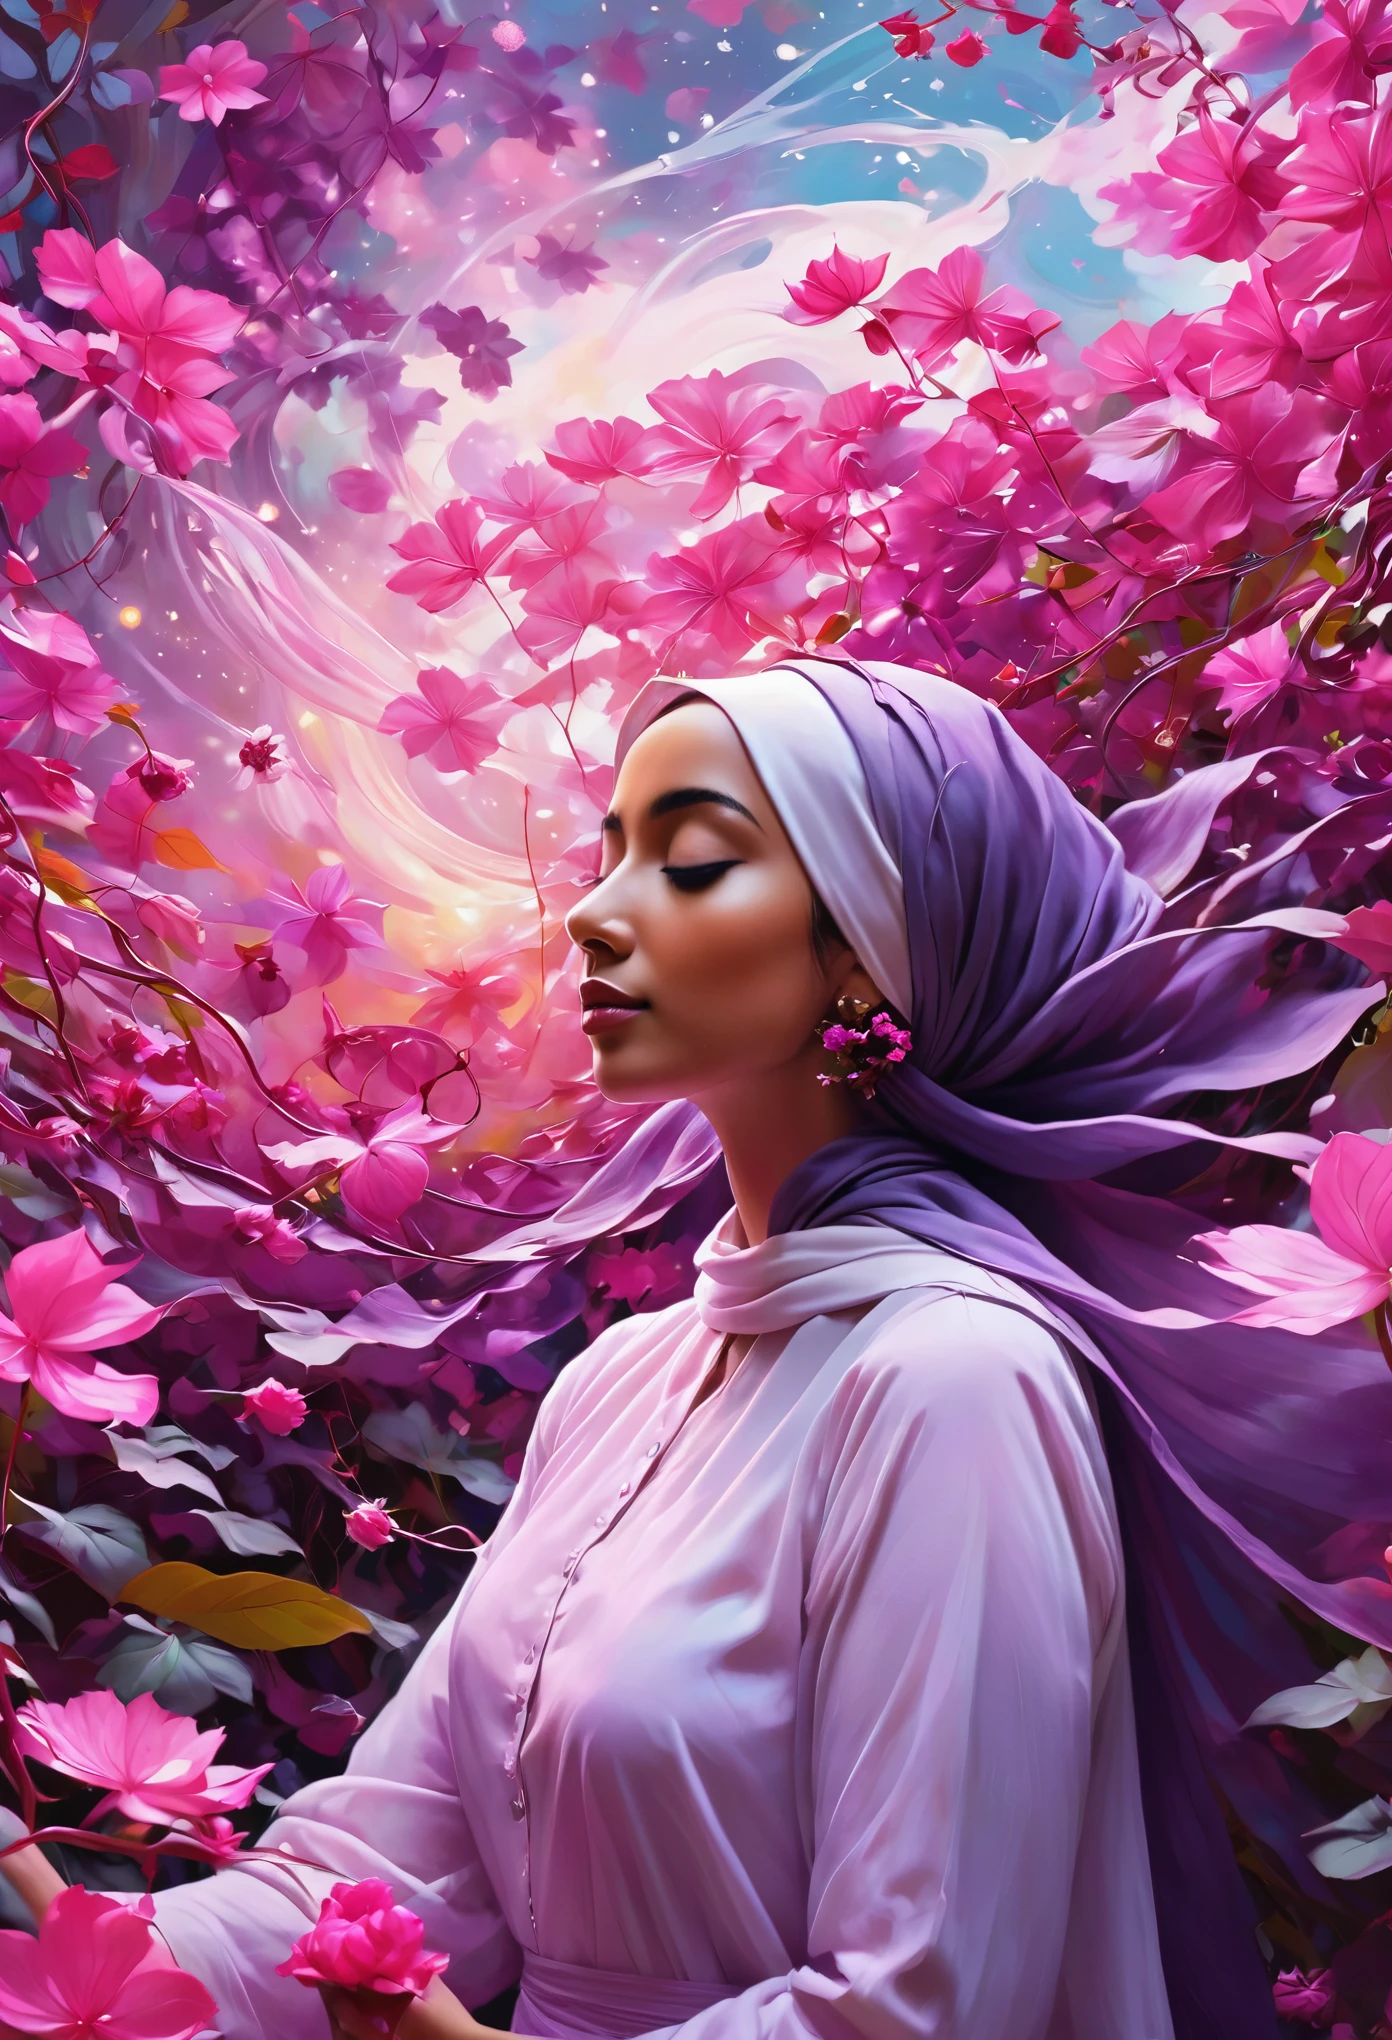 美丽的头巾 一幅迷人的数字绘画, 灵感来自诺曼·罗克韦尔的标志性风格, 画中是一位宁静的年轻女子站在粉色和紫色的花叶和藤蔓的旋转舞动之中. 她被一个植物生物包围着, 根与花交织在一起, 创造一种深度和运动感. 女人散发出一种坚定和冷静的感觉, 仿佛她与宇宙的自然韵律完美契合. 整体氛围 